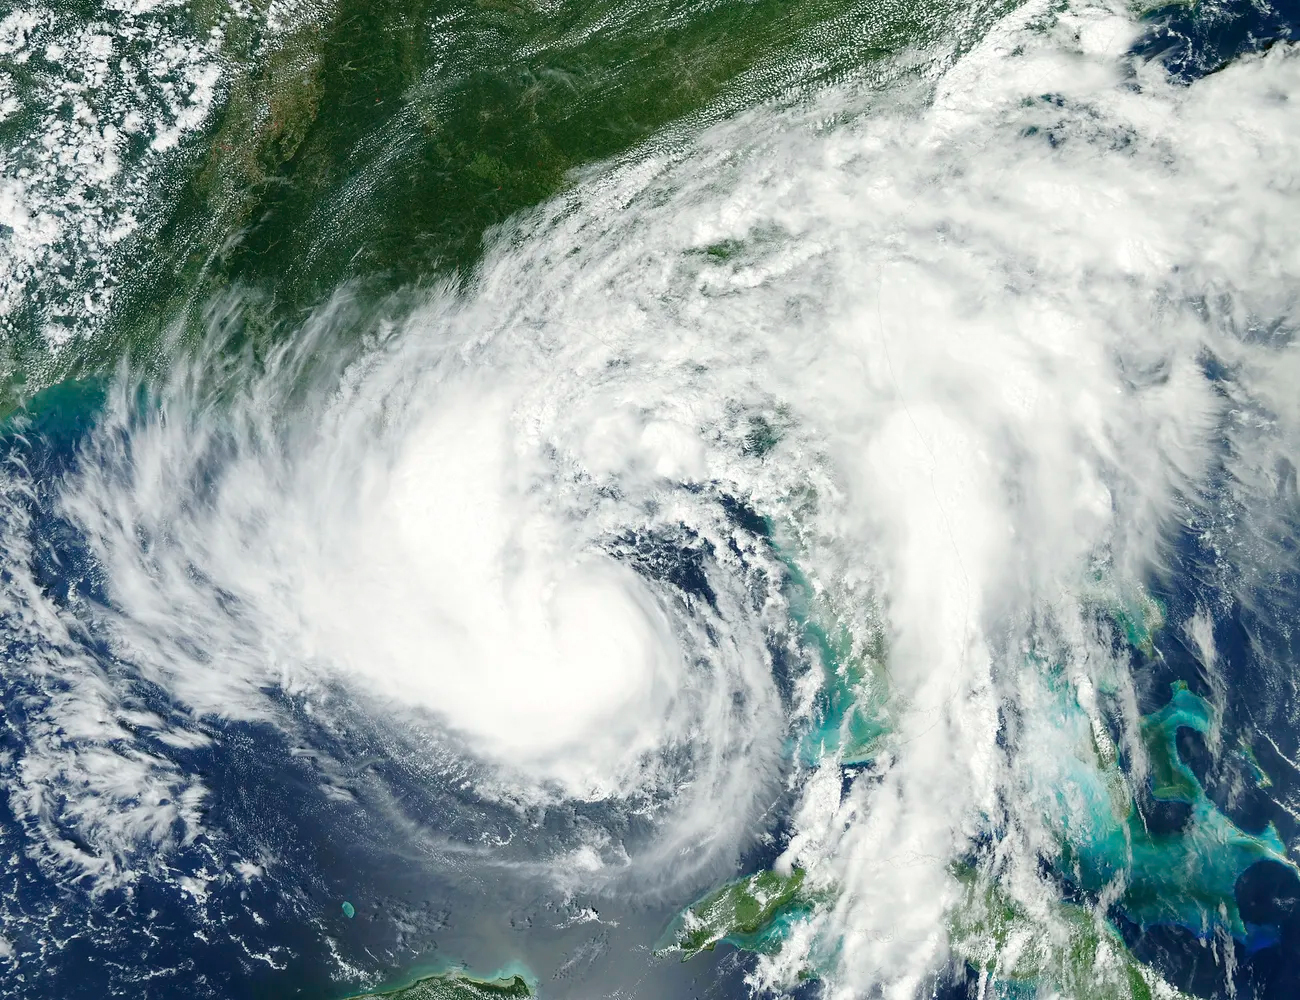 تتحرك العاصفة الاستوائية إسحاق باتجاه الشمال الغربي عبر خليج المكسيك مع سحابة شرقية تغطي ولاية فلوريدا بأكملها